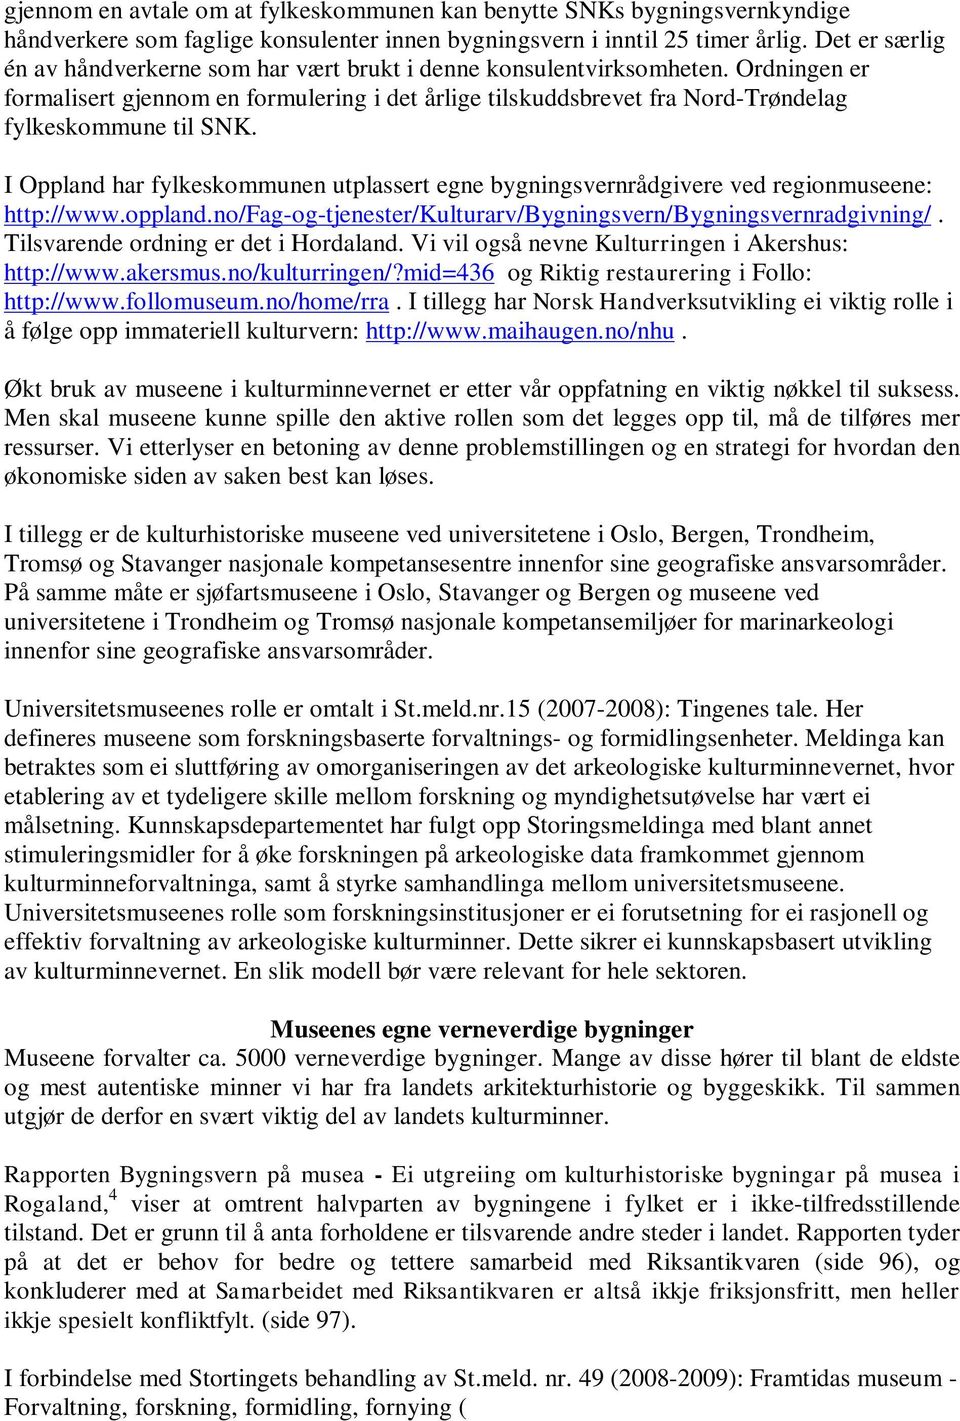 Ordningen er formalisert gjennom en formulering i det årlige tilskuddsbrevet fra Nord-Trøndelag fylkeskommune til SNK.